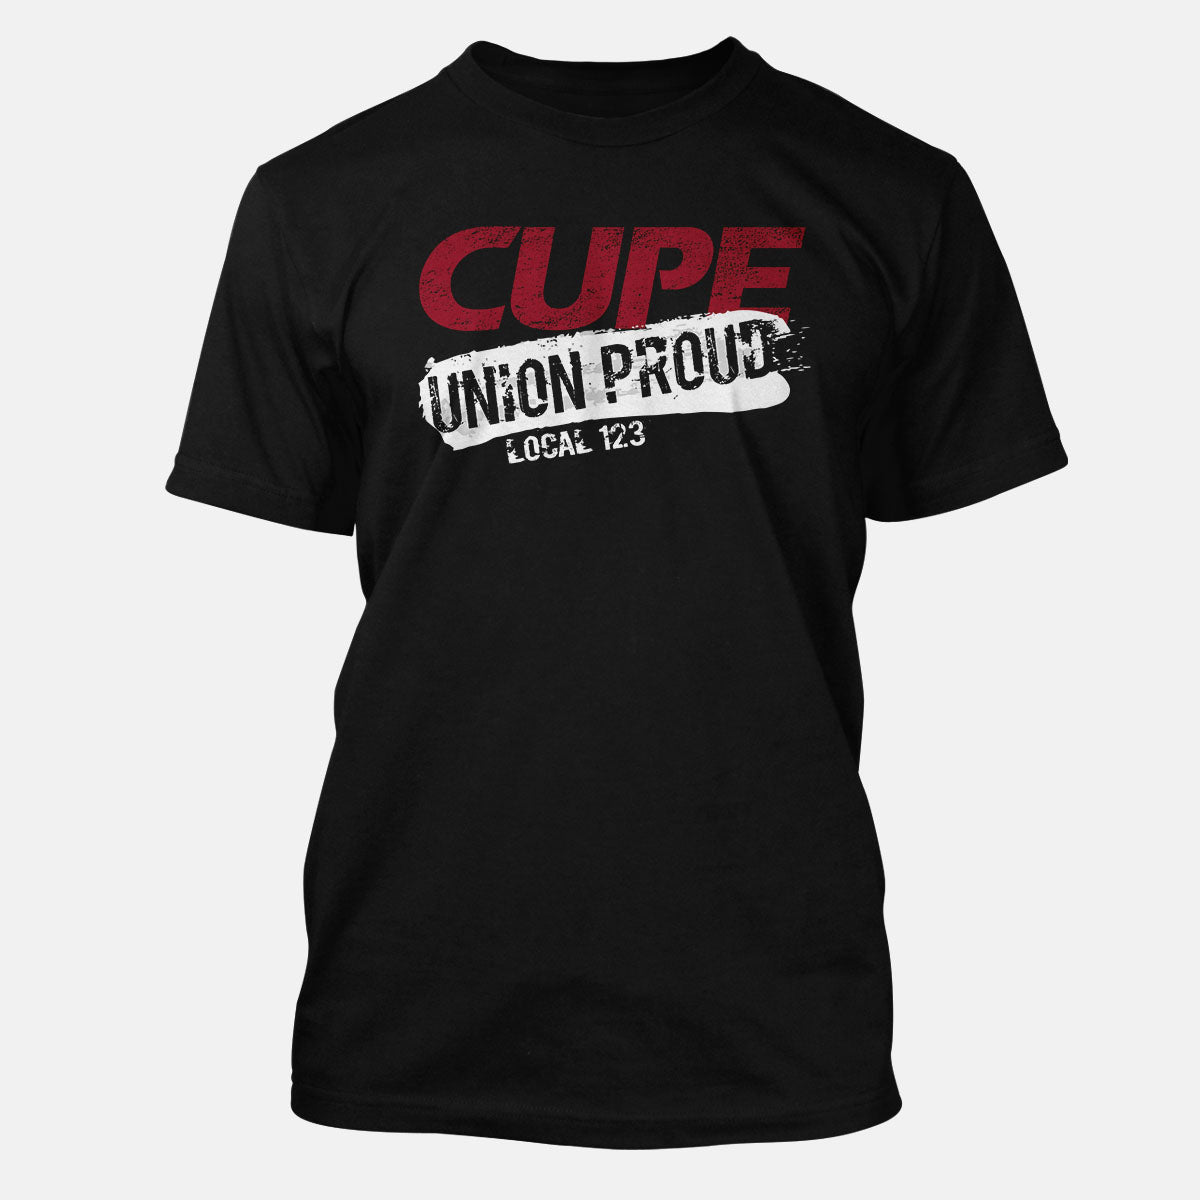 CUPE Union Proud Splatter Apparel – unionproud.com